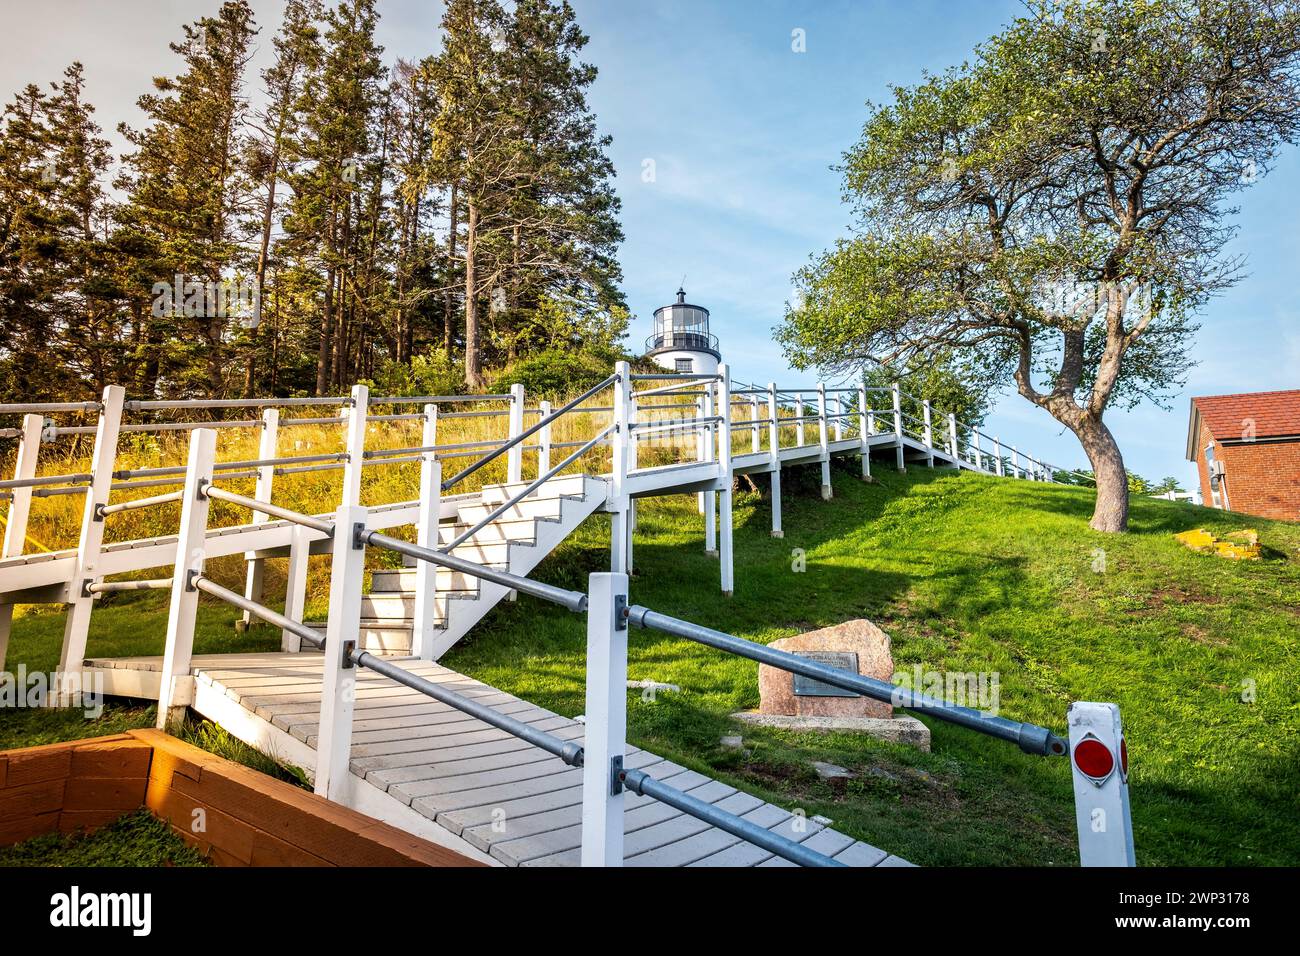 Faro di Owls Head a Rockland, Maine, USA, in una giornata estiva limpida e soleggiata con cielo blu Foto Stock